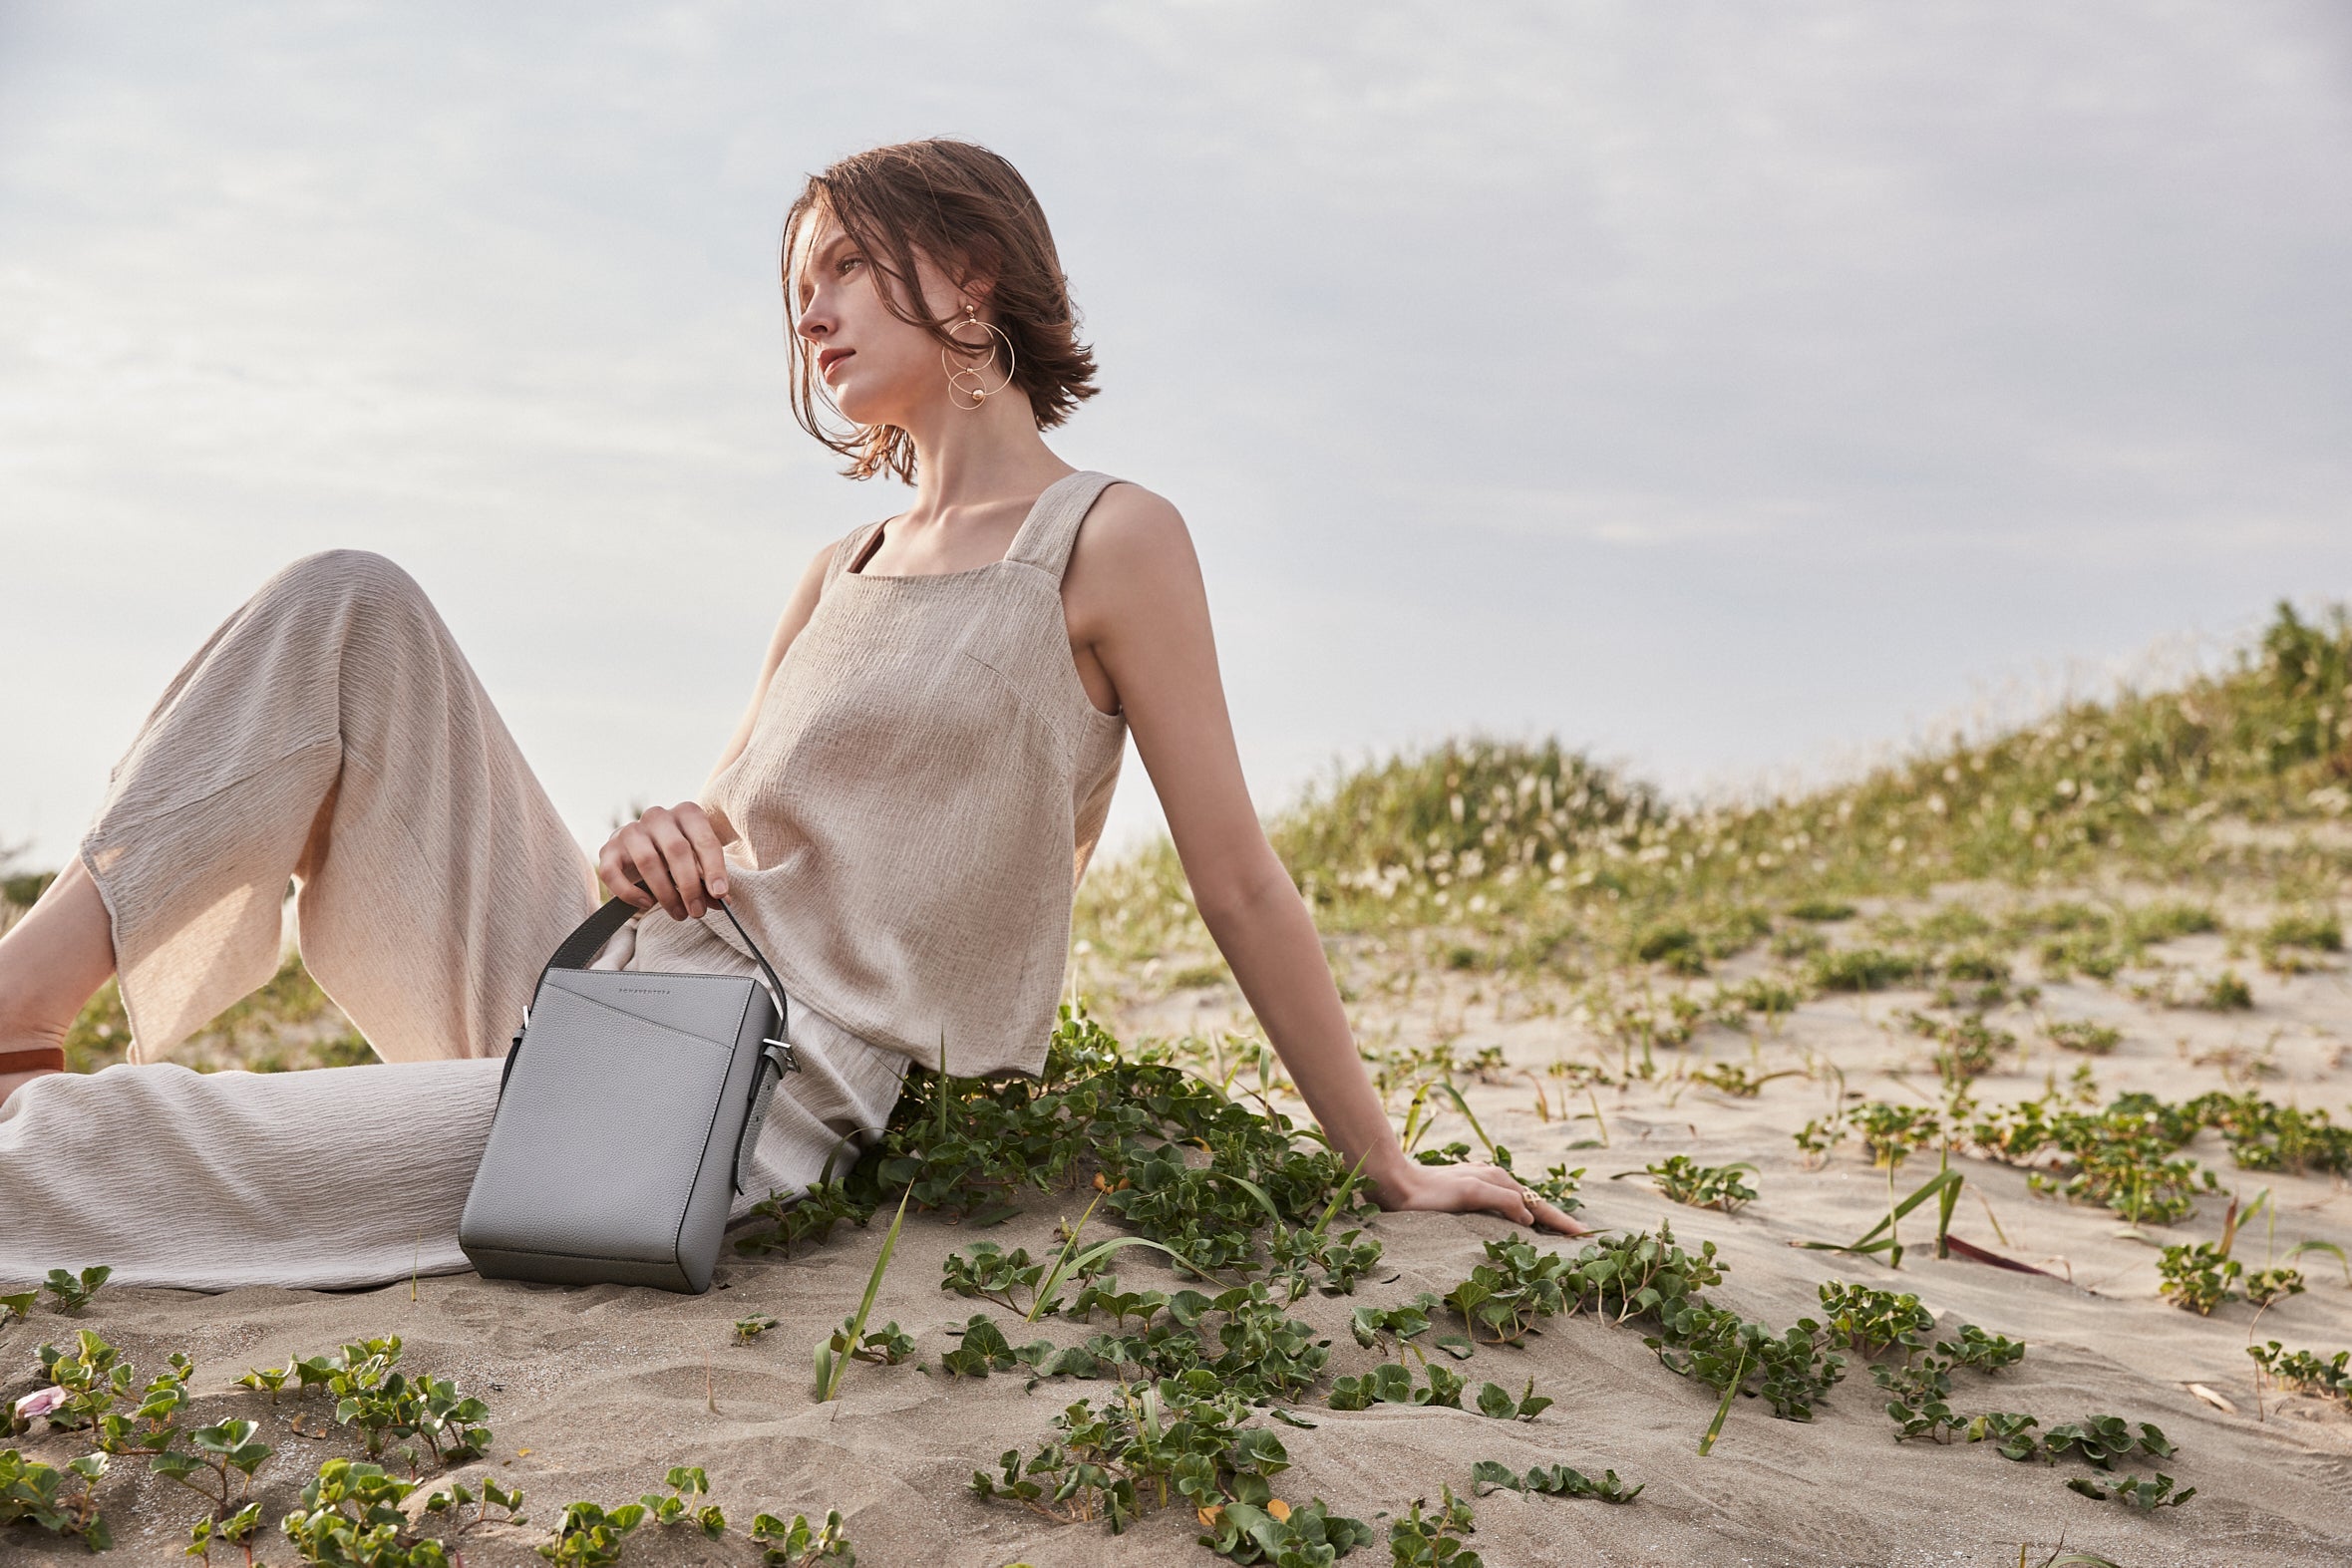 En stilfullt klädd, miljömedveten kvinna bär en hållbar läderväska från BONAVENTURA på stranden.